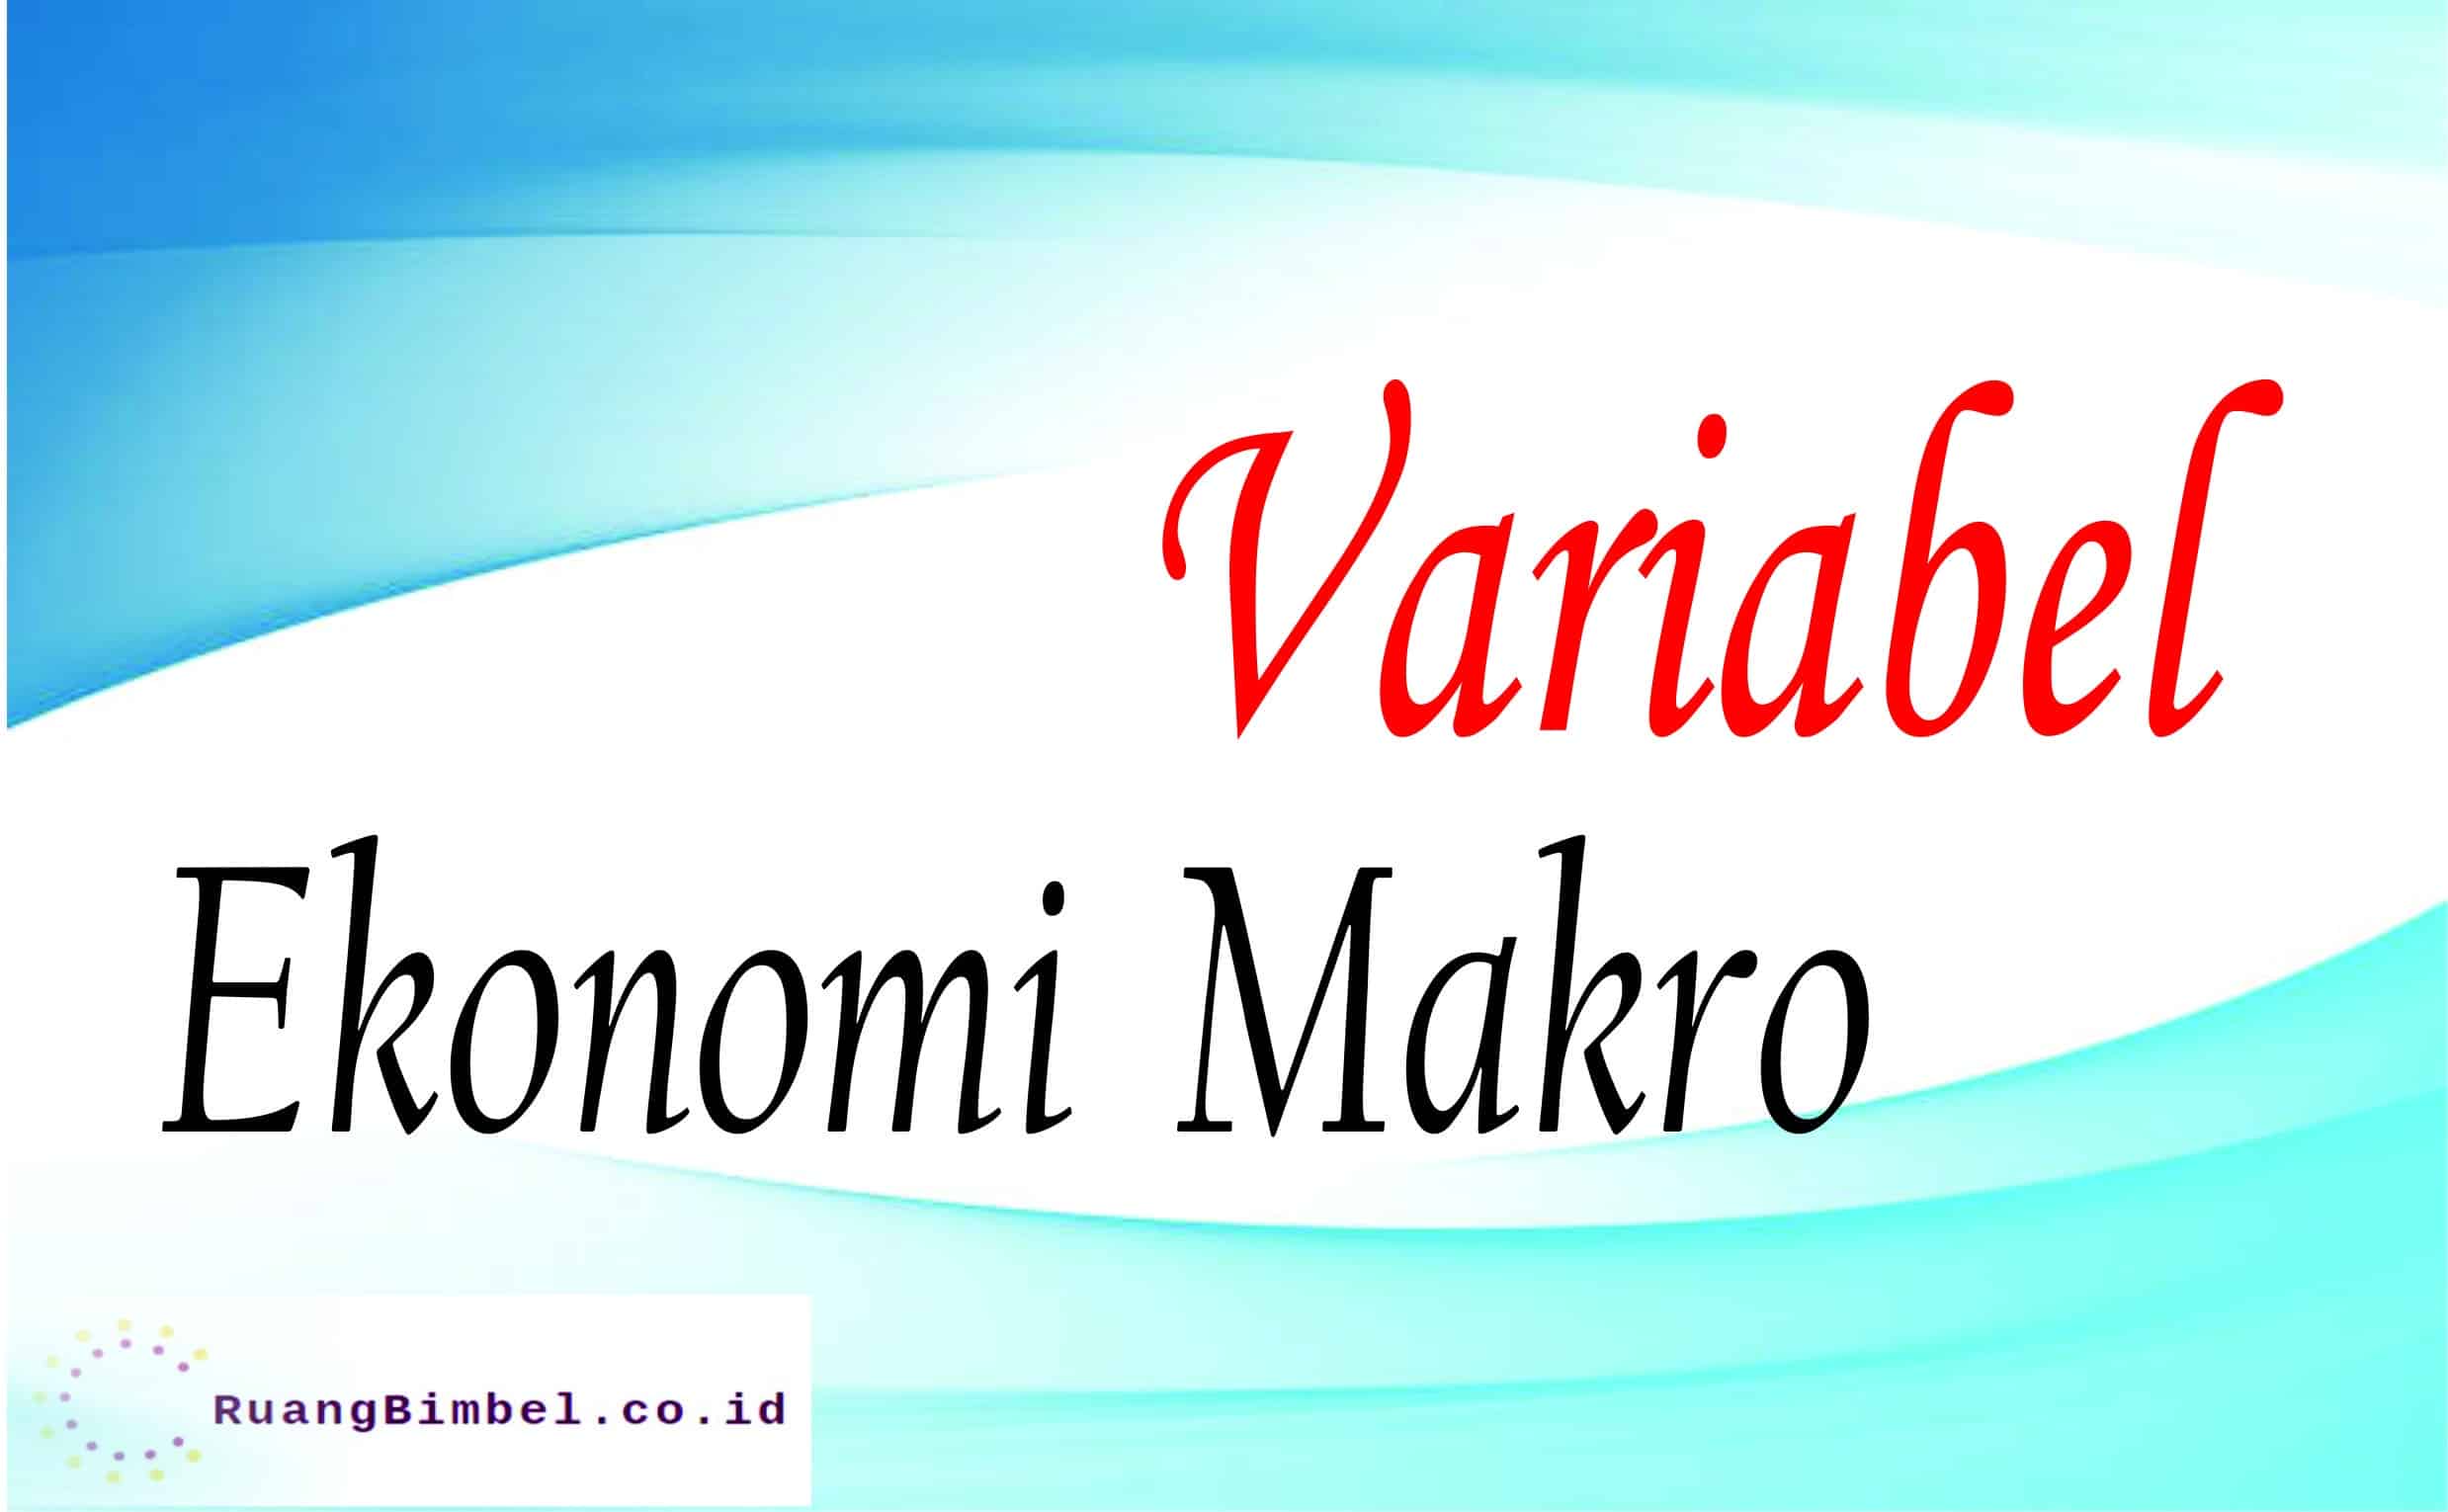 Ilmu ekonomi makro mempelajari variabel-variabel secara